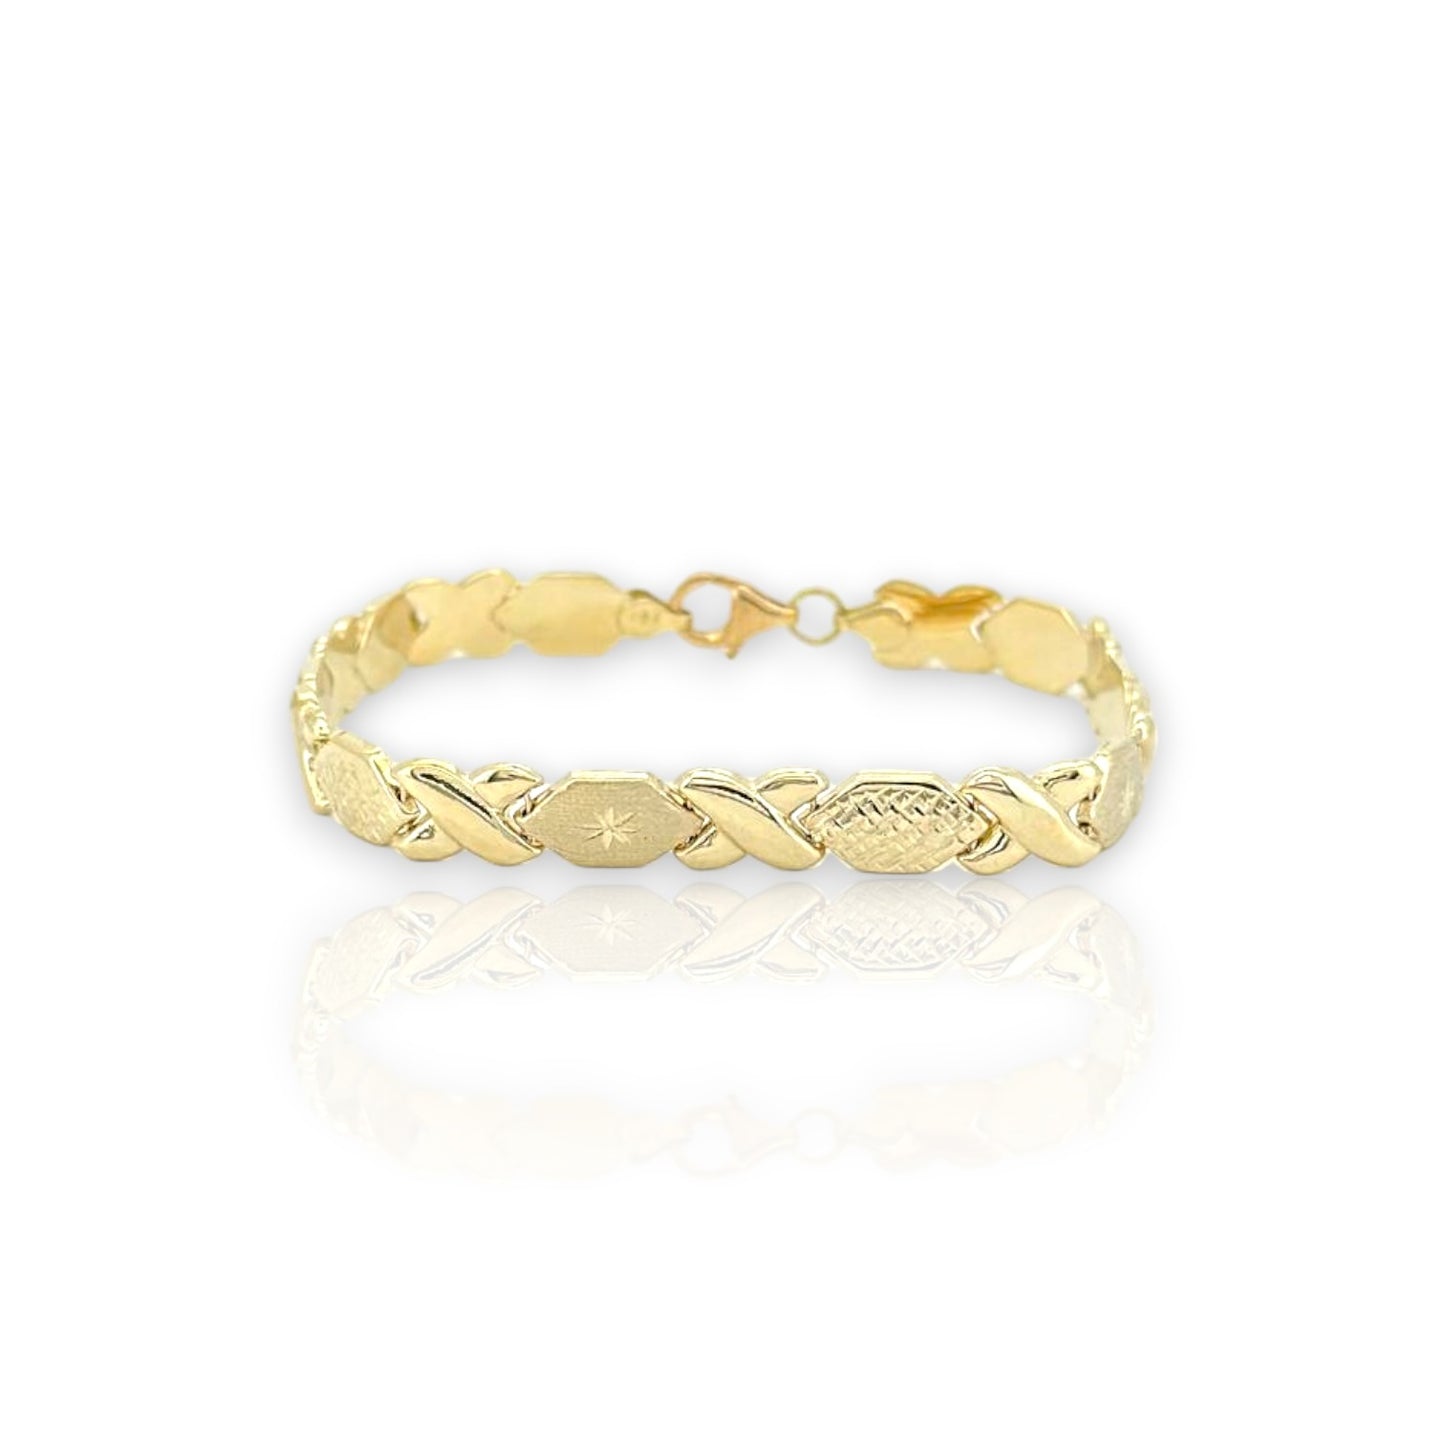 Kisses bracelet - 10k yellow gold